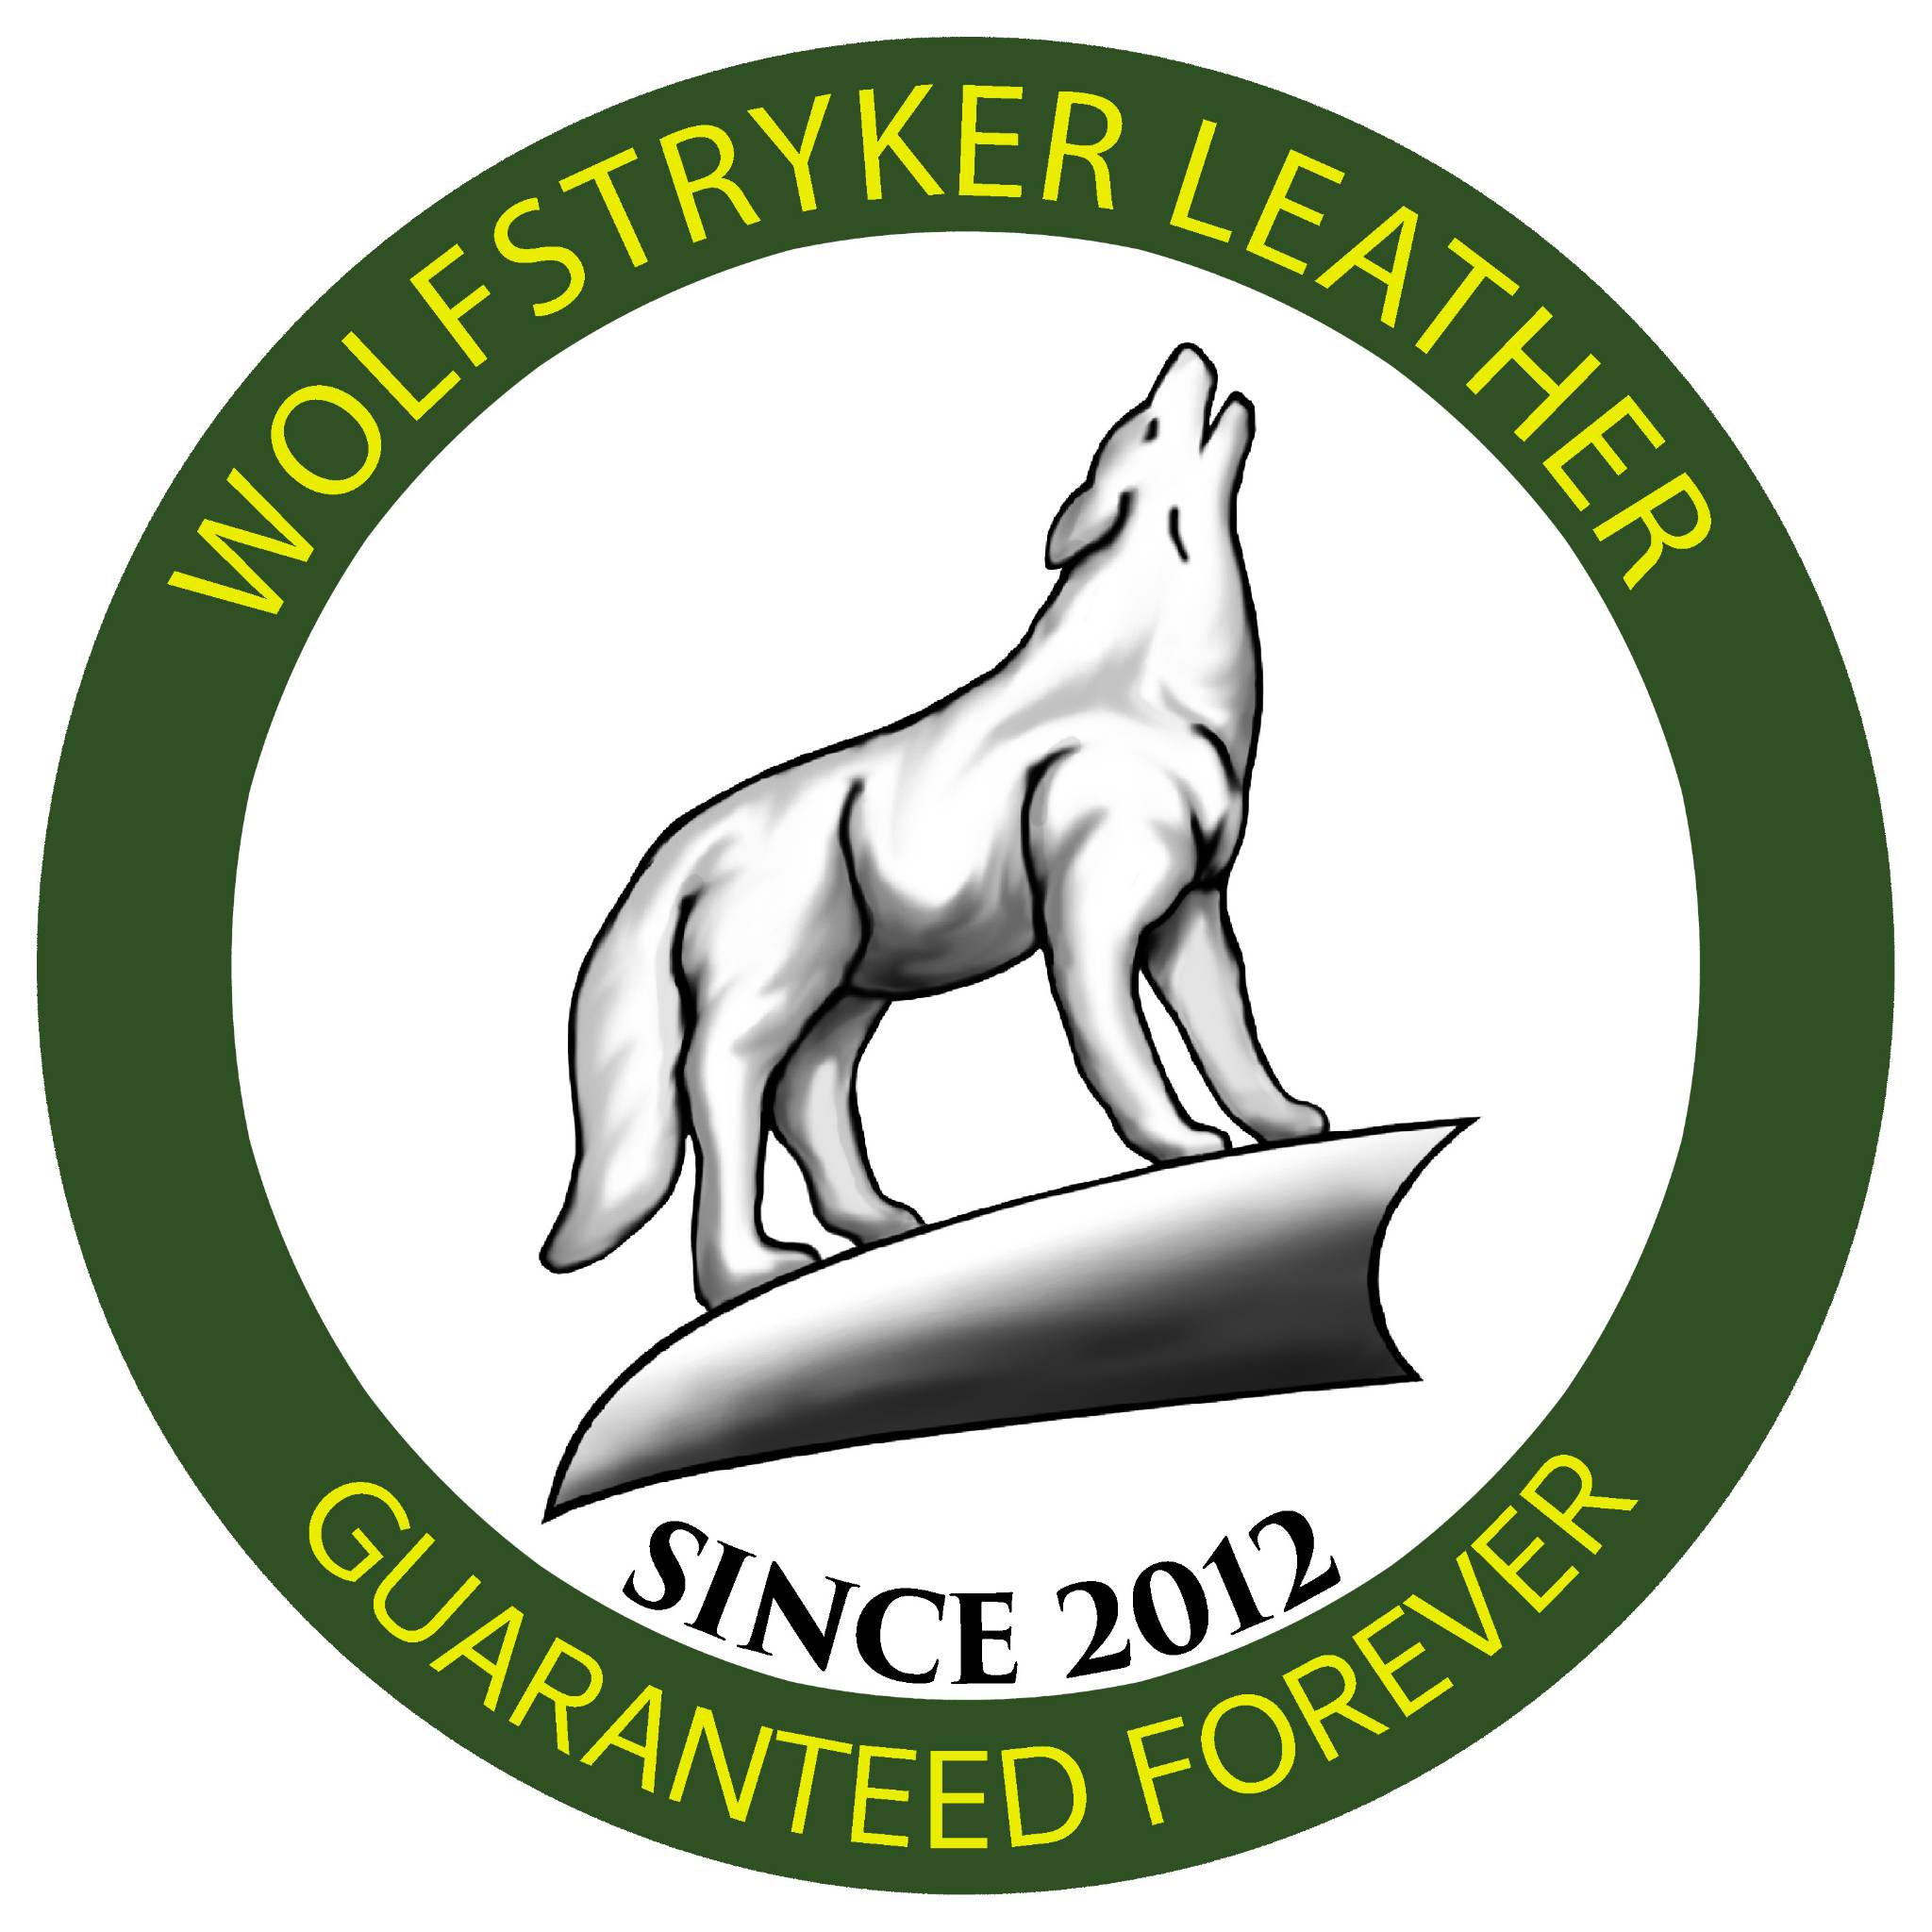 Wolf Stryker updated